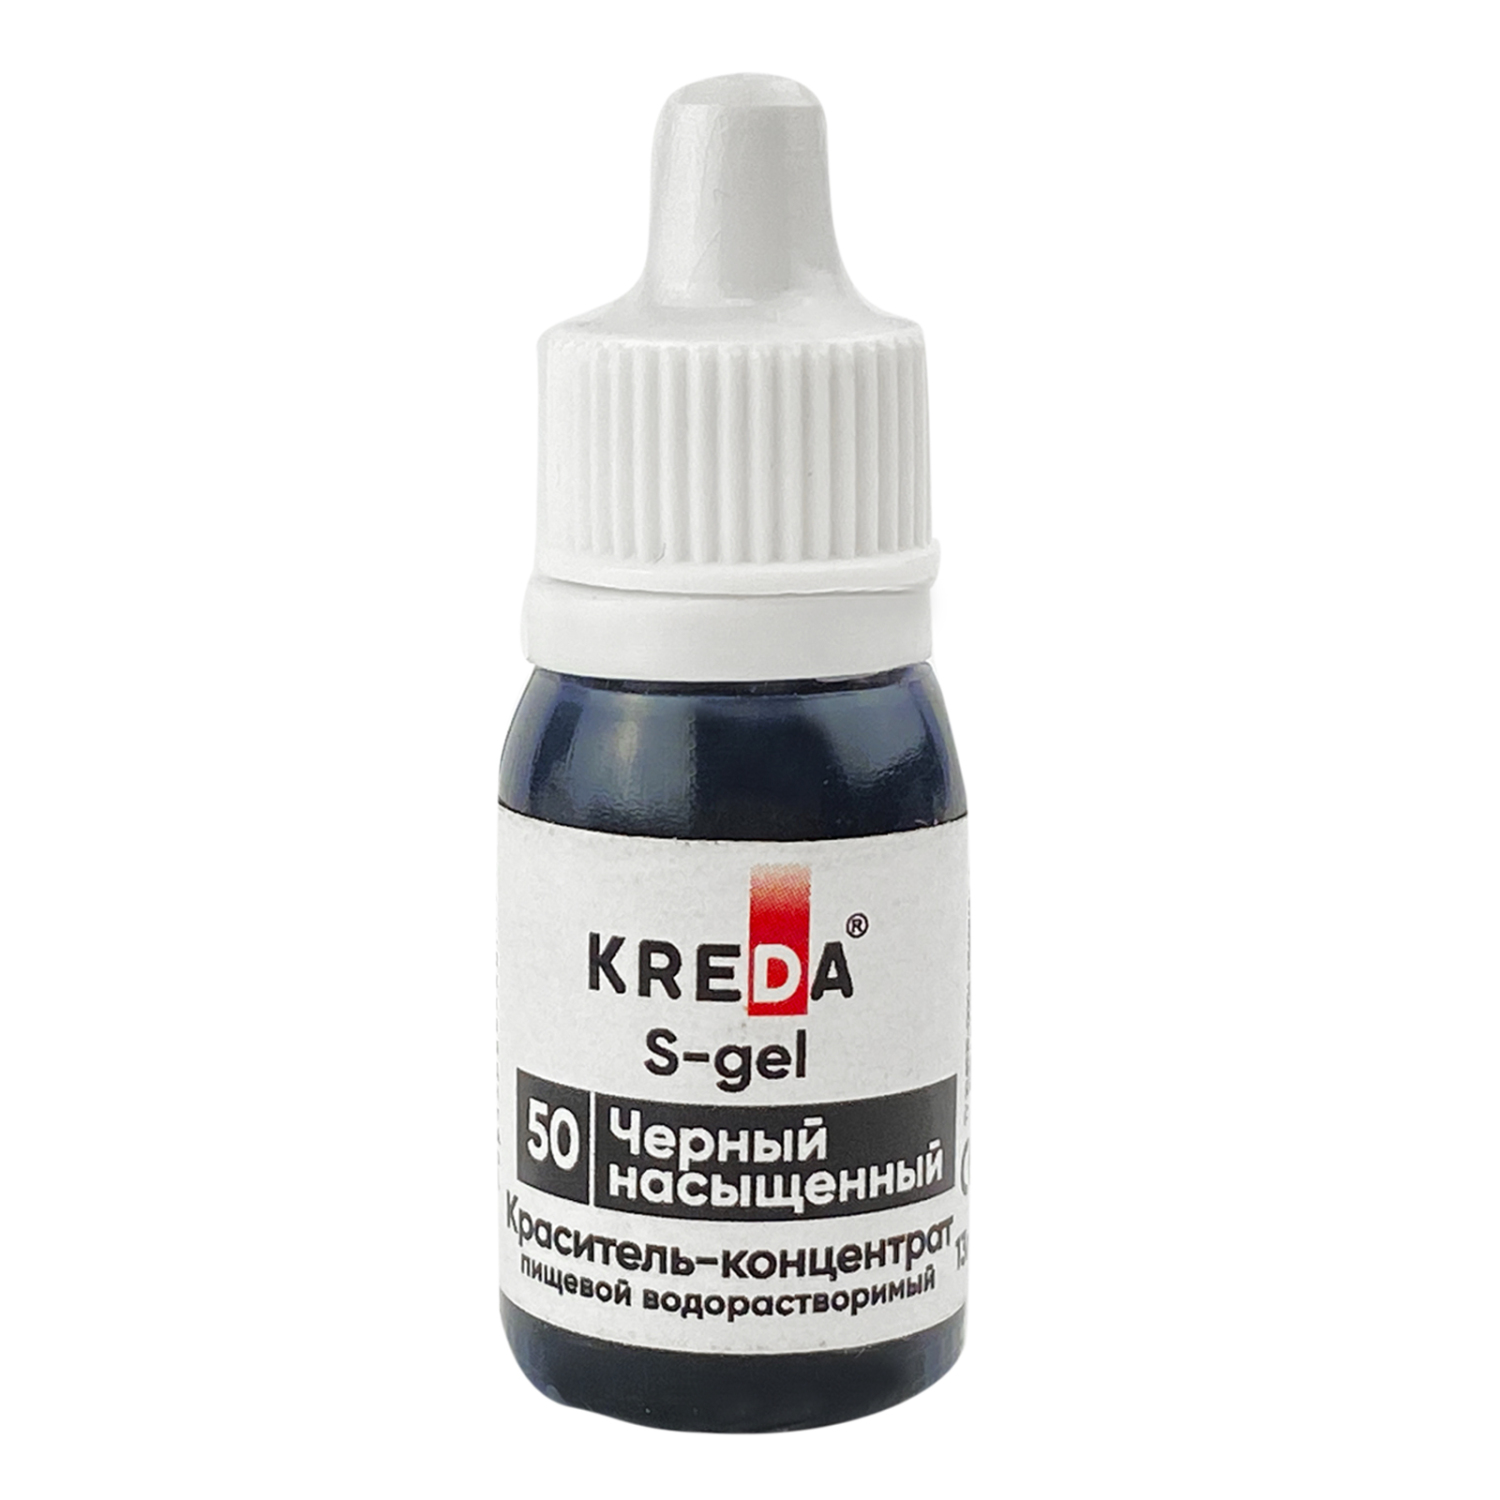 фото Краситель-концентрат креда (kreda) s-gel черный насыщенный №50 гелевый пищевой 13г